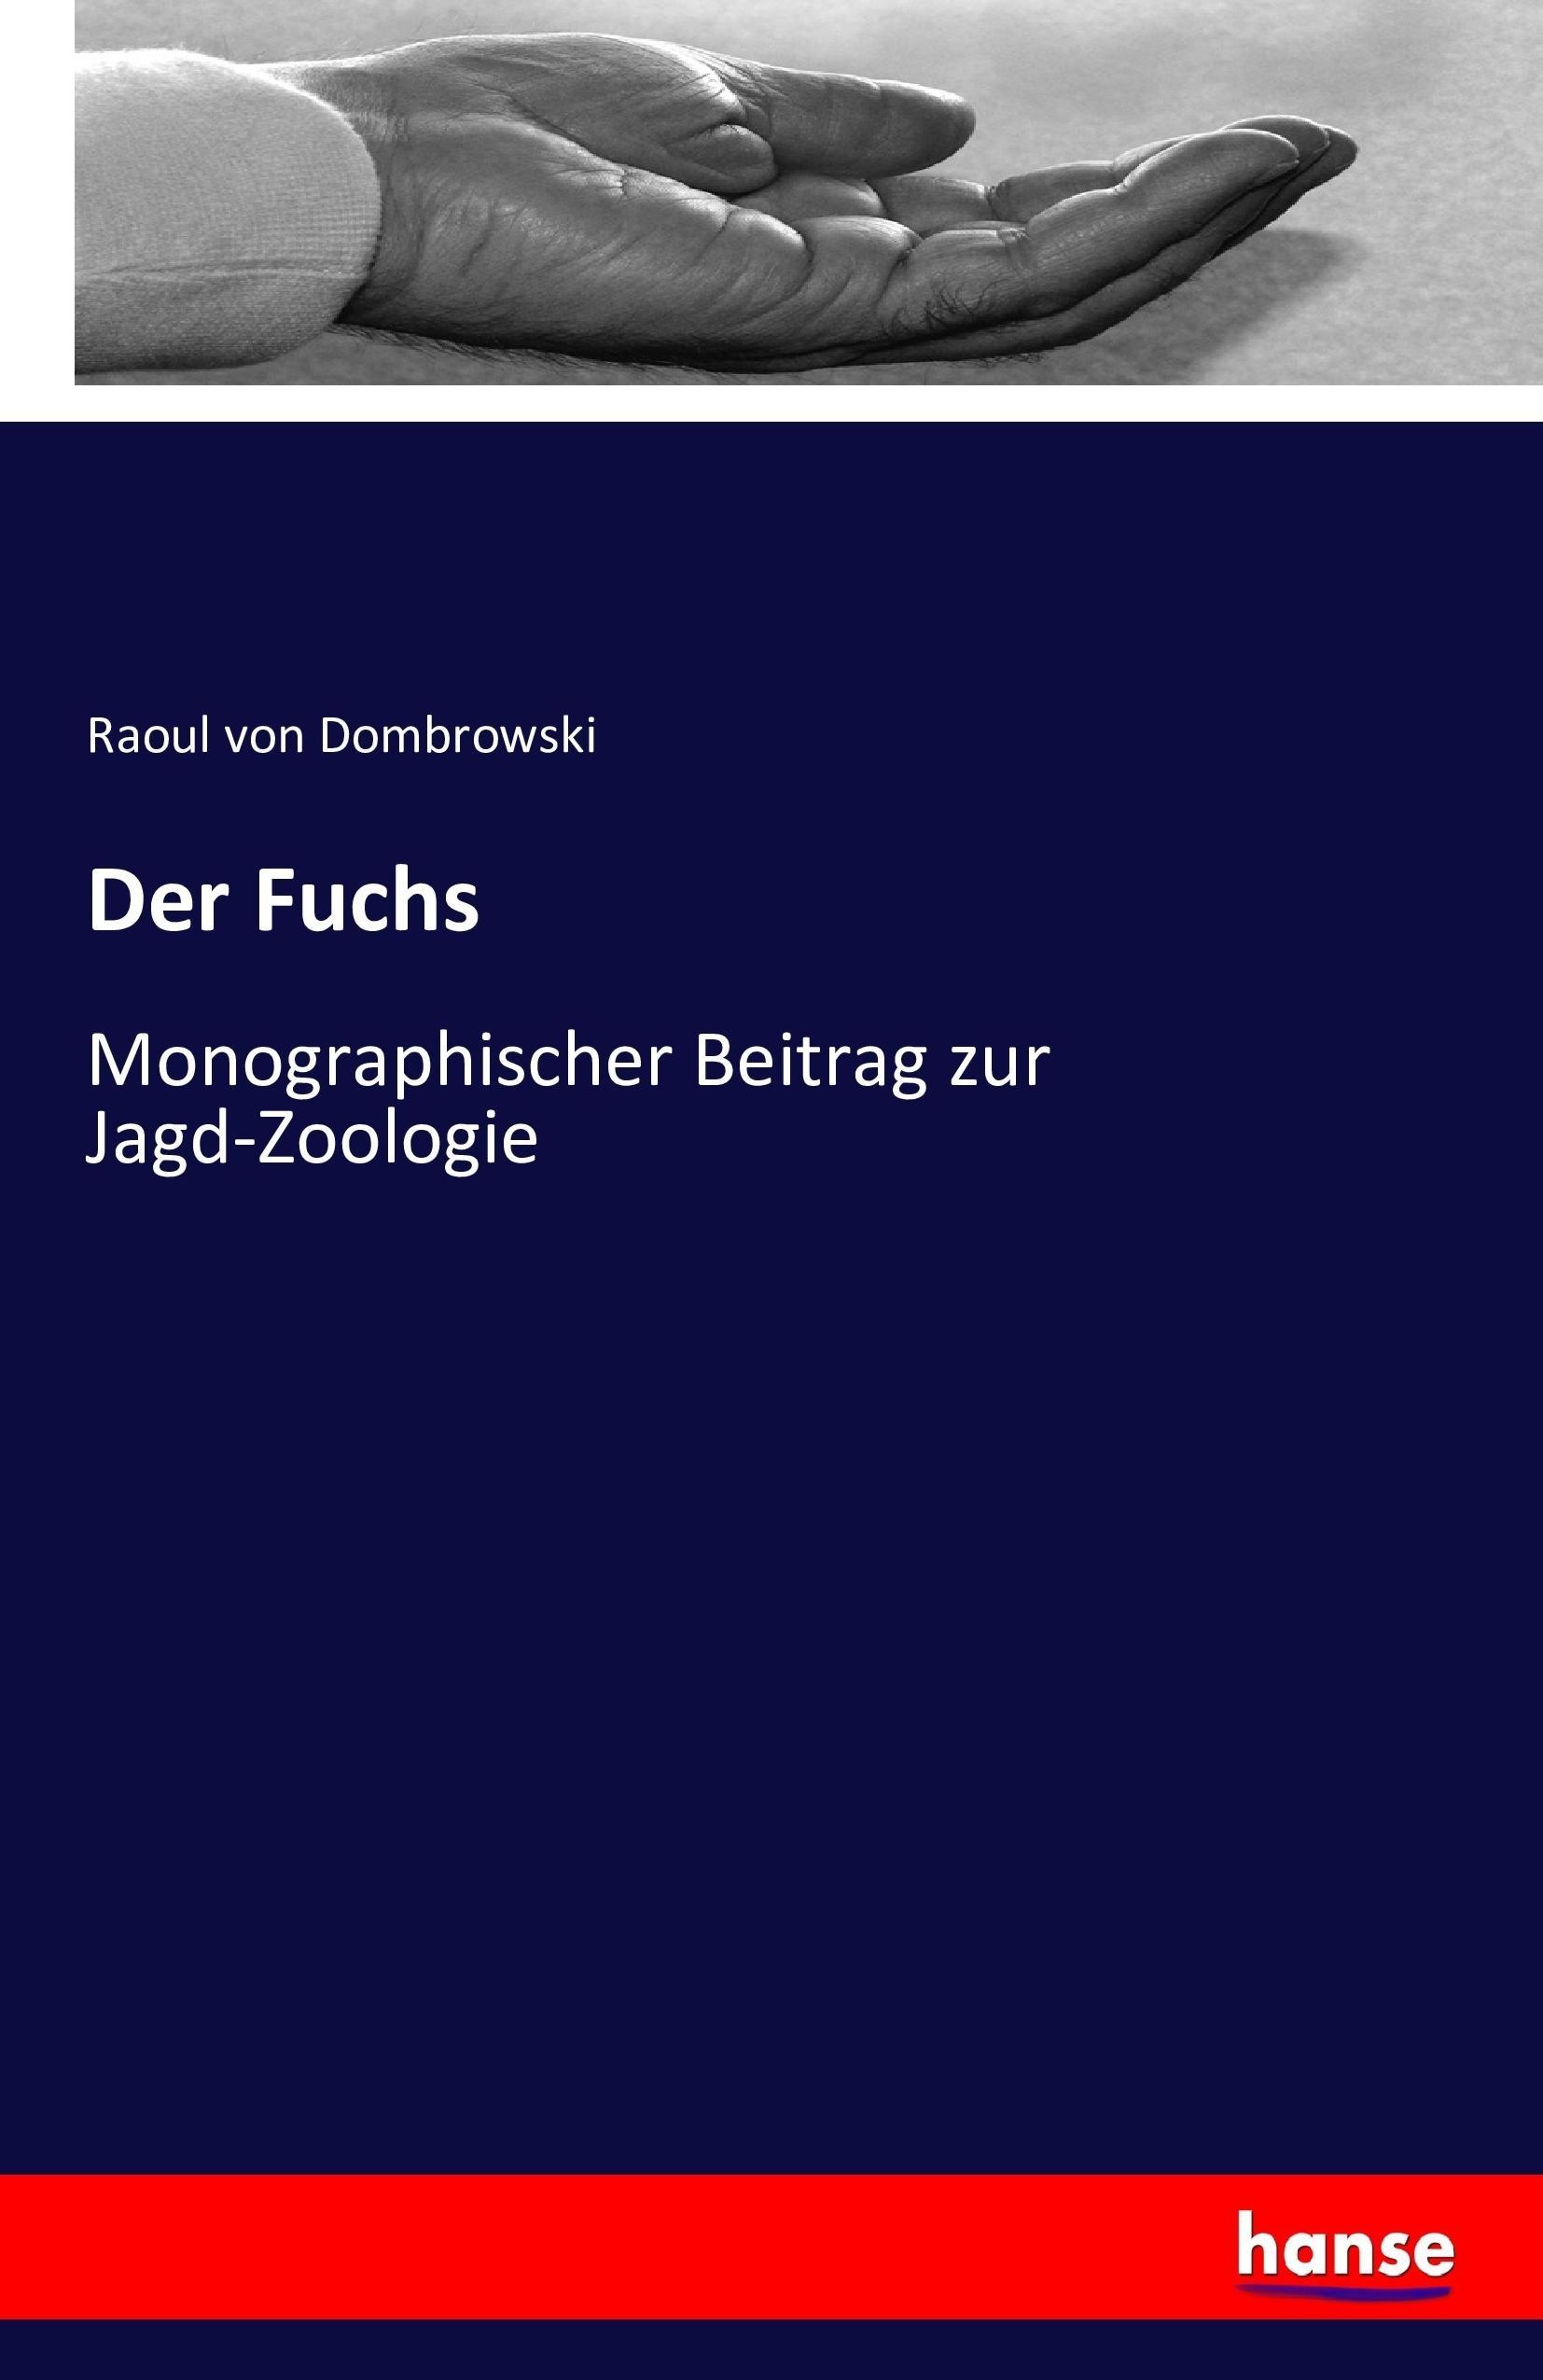 Der Fuchs / Monographischer Beitrag zur Jagd-Zoologie / Raoul Von Dombrowski / Taschenbuch / Paperback / 284 S. / Deutsch / 2016 / hansebooks / EAN 9783743301030 - Dombrowski, Raoul Von